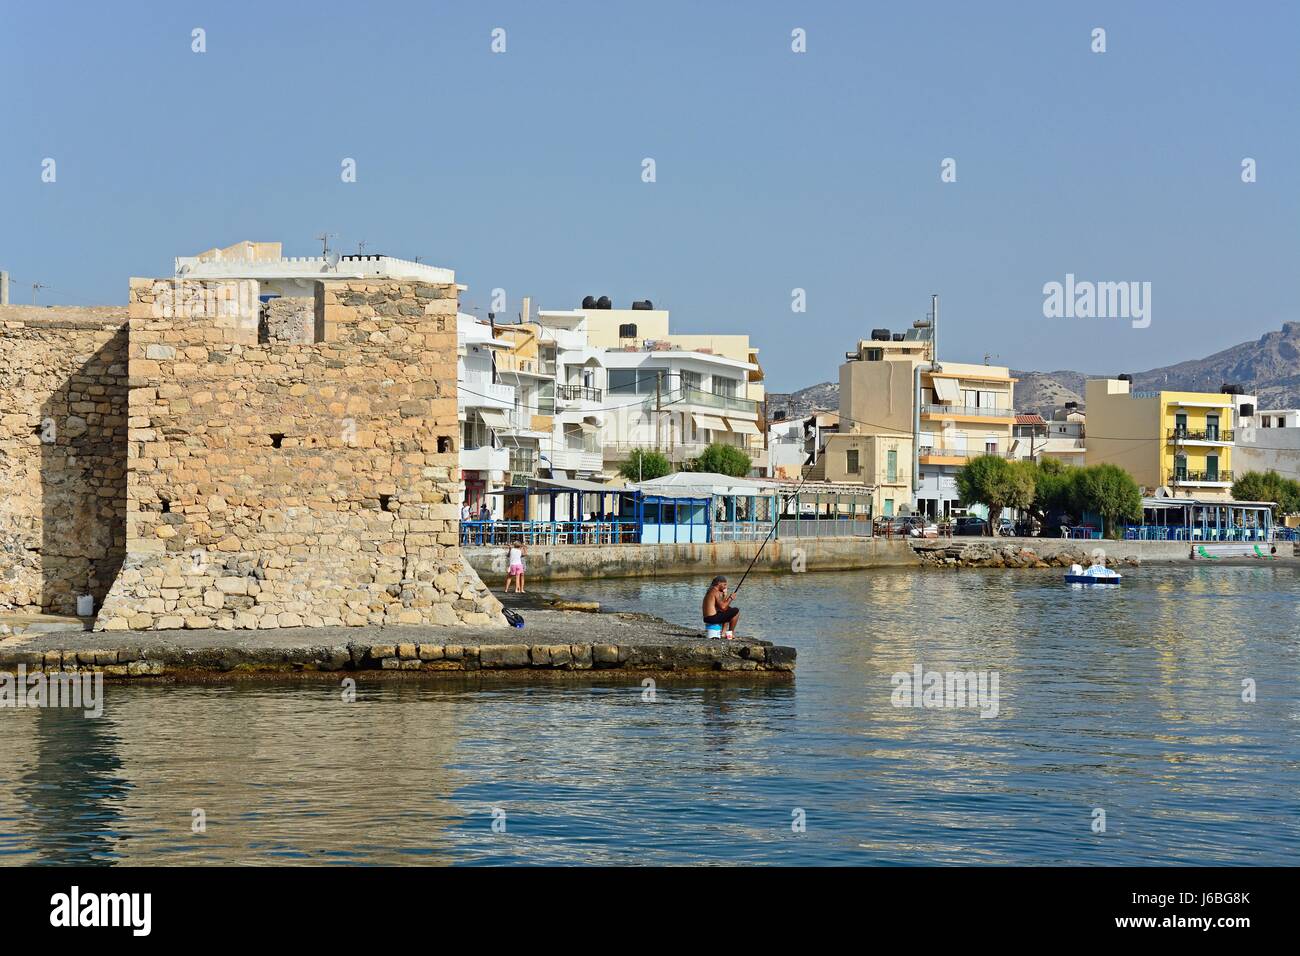 Ecke von Kales venezianische Festung an der Hafeneinfahrt mit Blick entlang der Uferpromenade, Ierapetra, Kreta, Griechenland, Europa. Stockfoto